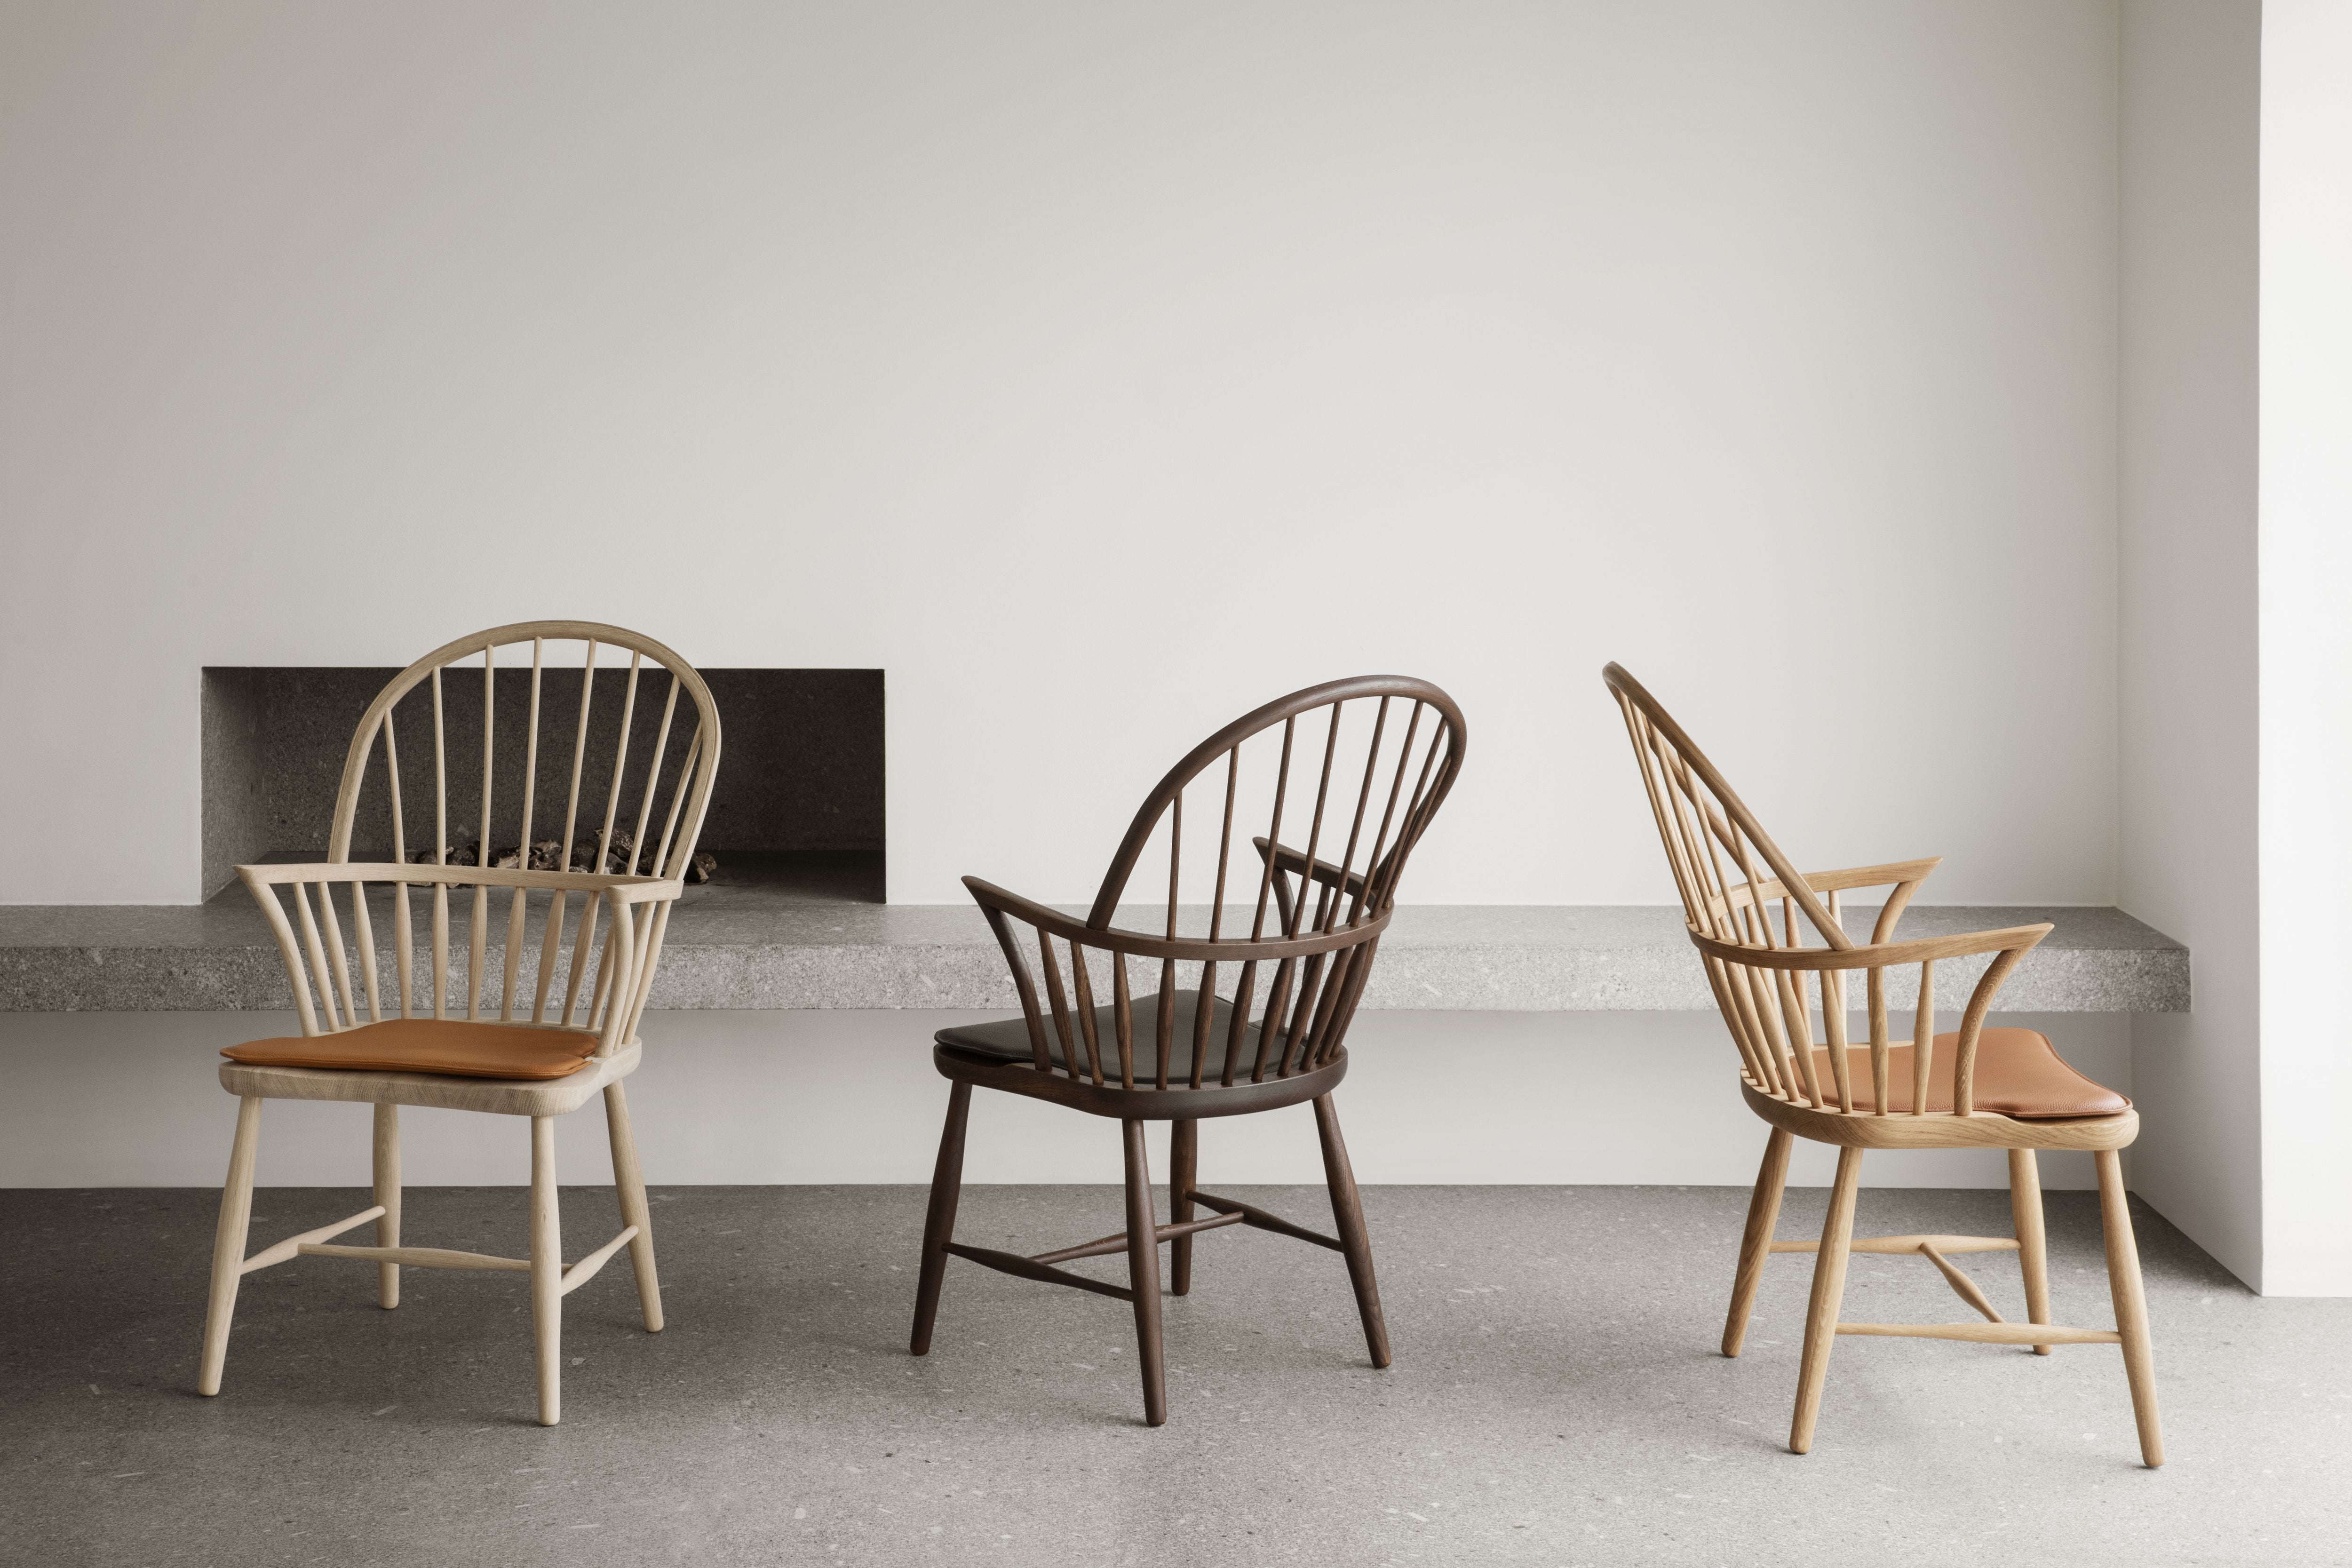 Carl Hansen Cushion For Windsor Chair, Leather Loke 7150